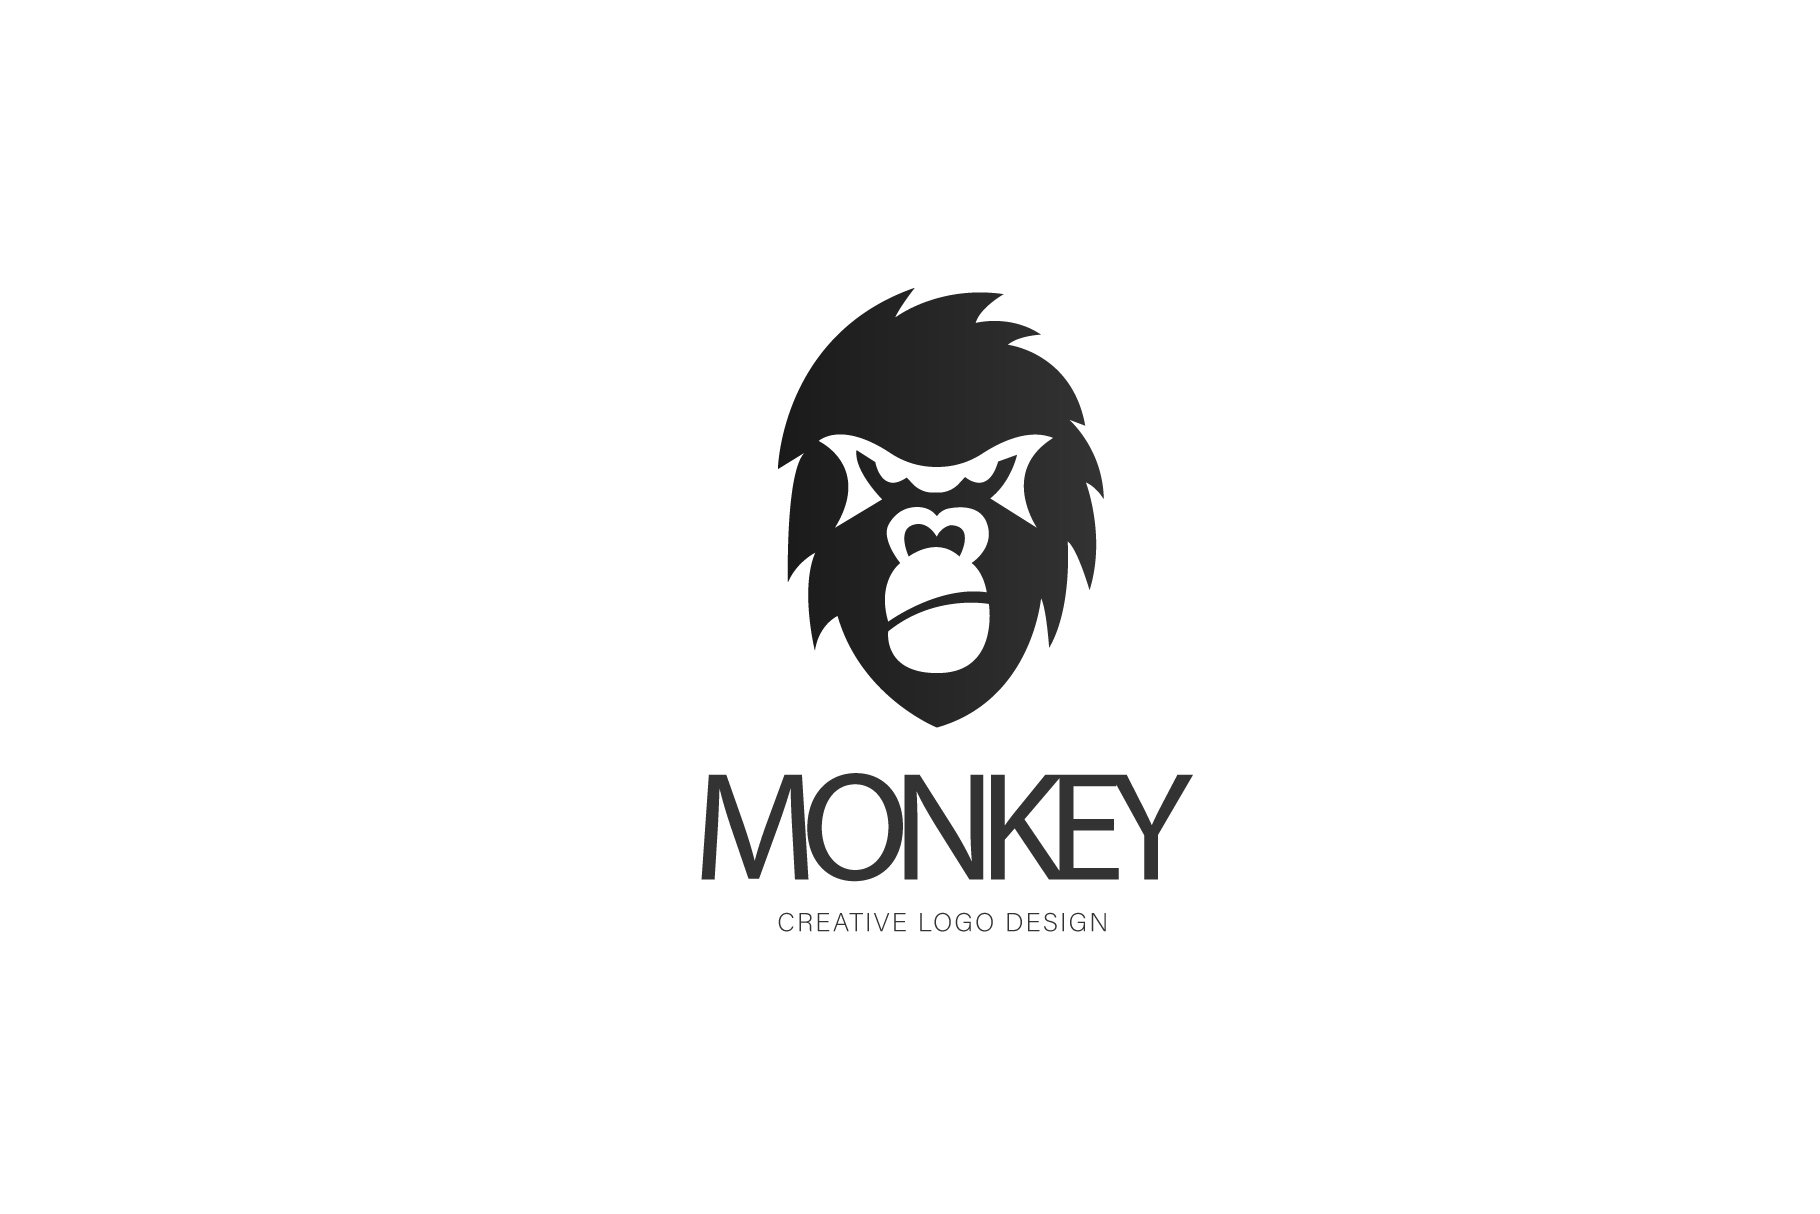 Monkey logo preview image.